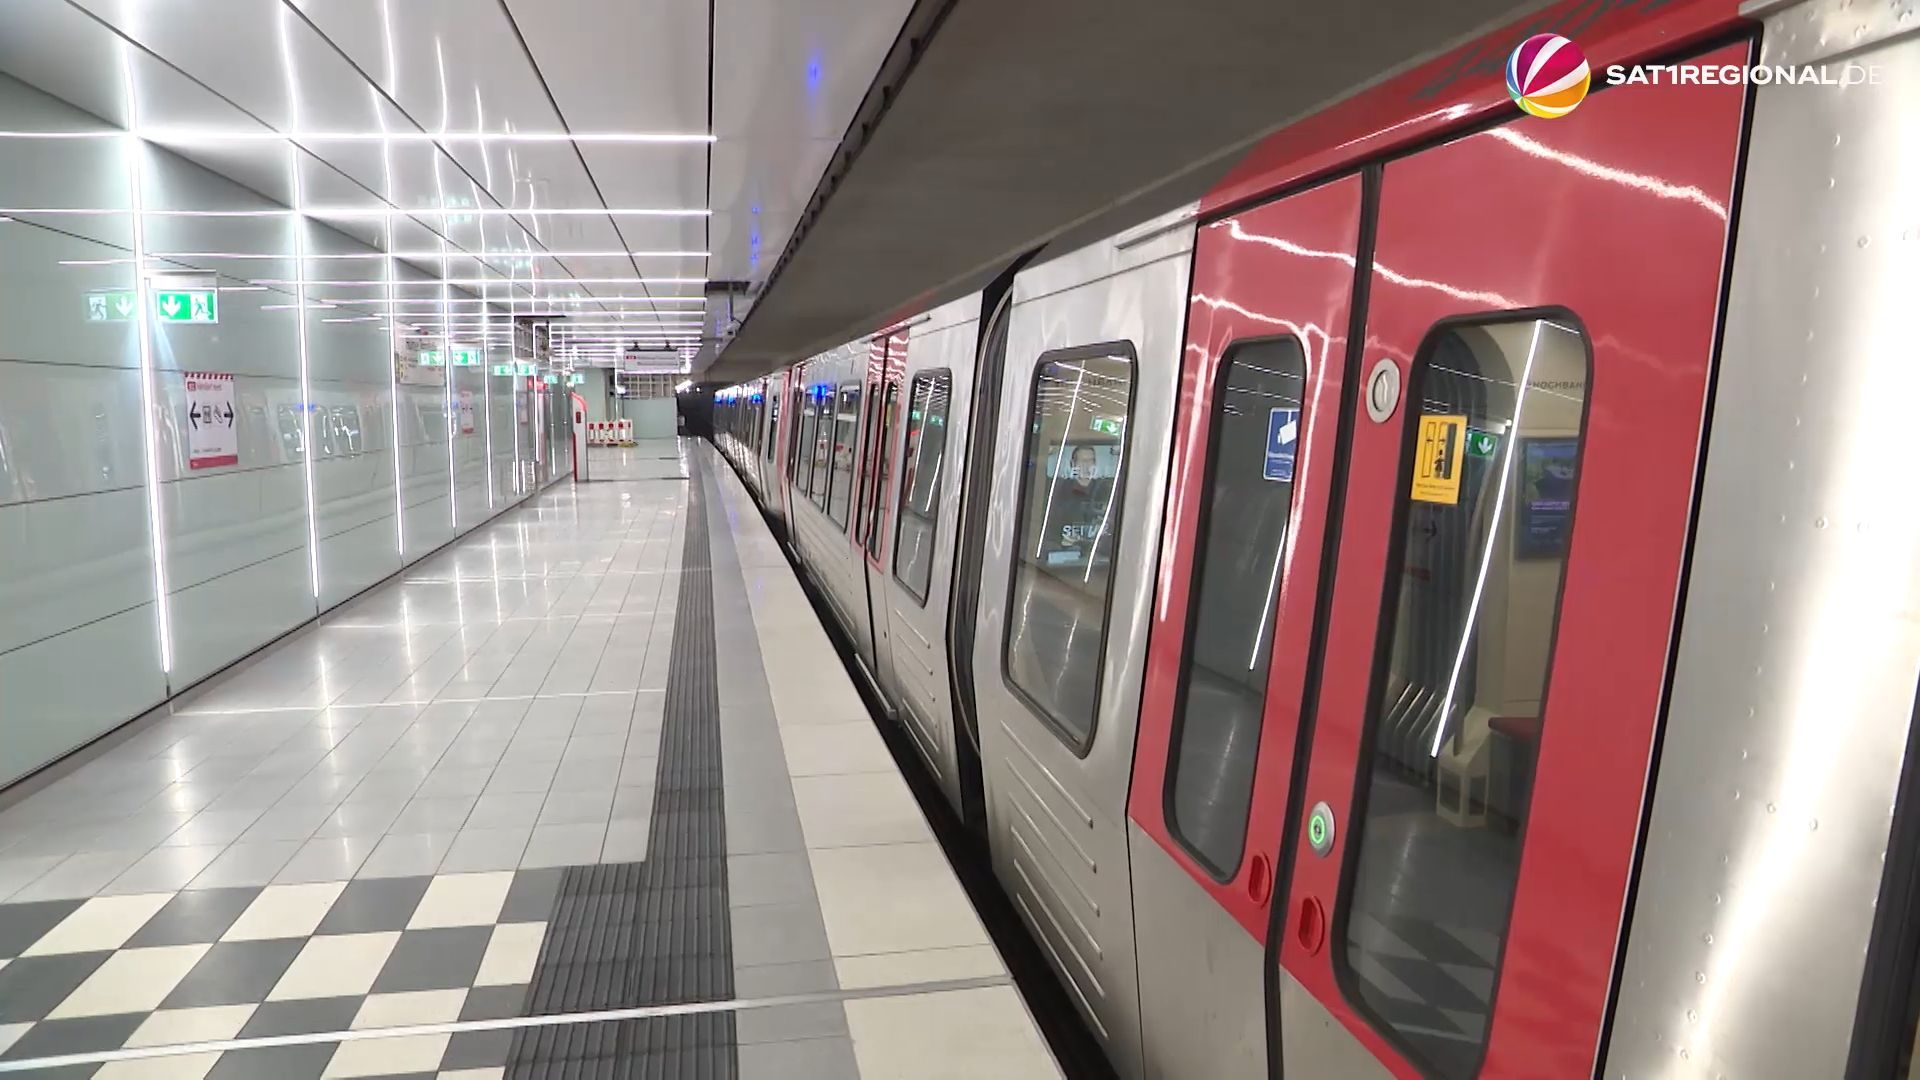 U-Bahn-Haltestelle Horner Rennbahn ab Montag wieder geöffnet